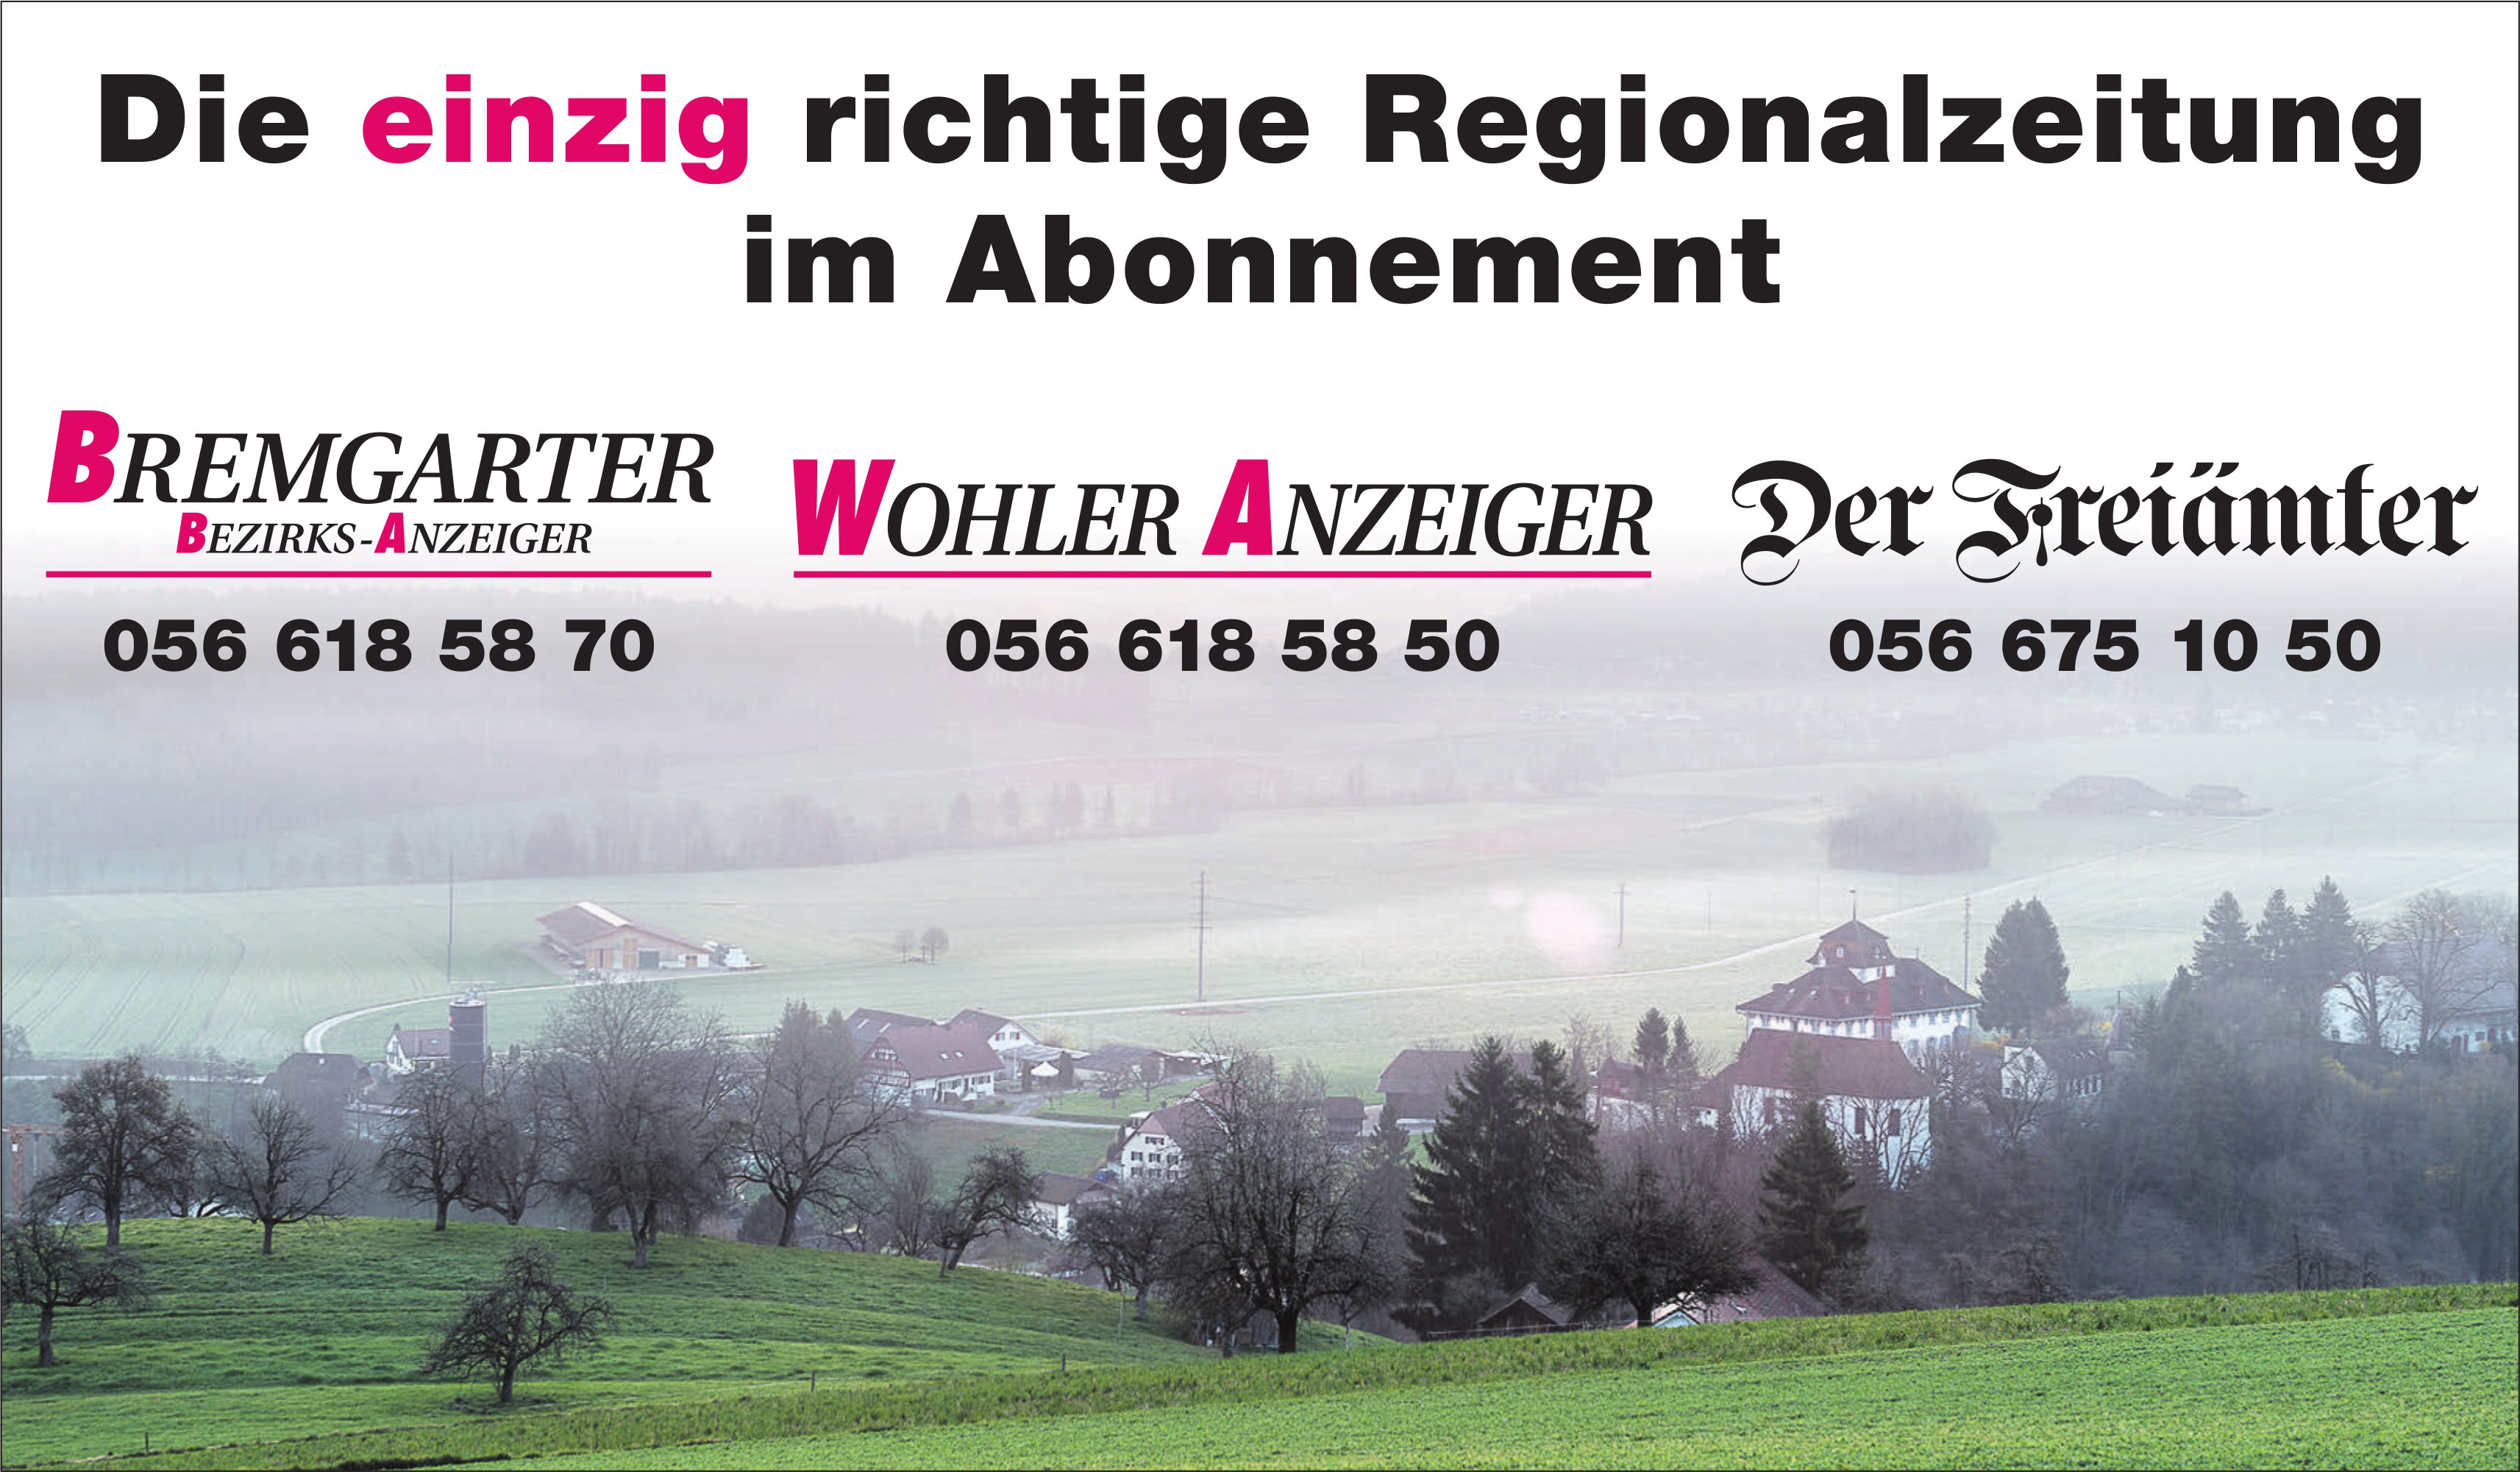 BBA/WA/Der Freiämter - Die einzig richtige Regionalzeitung im Abonnement